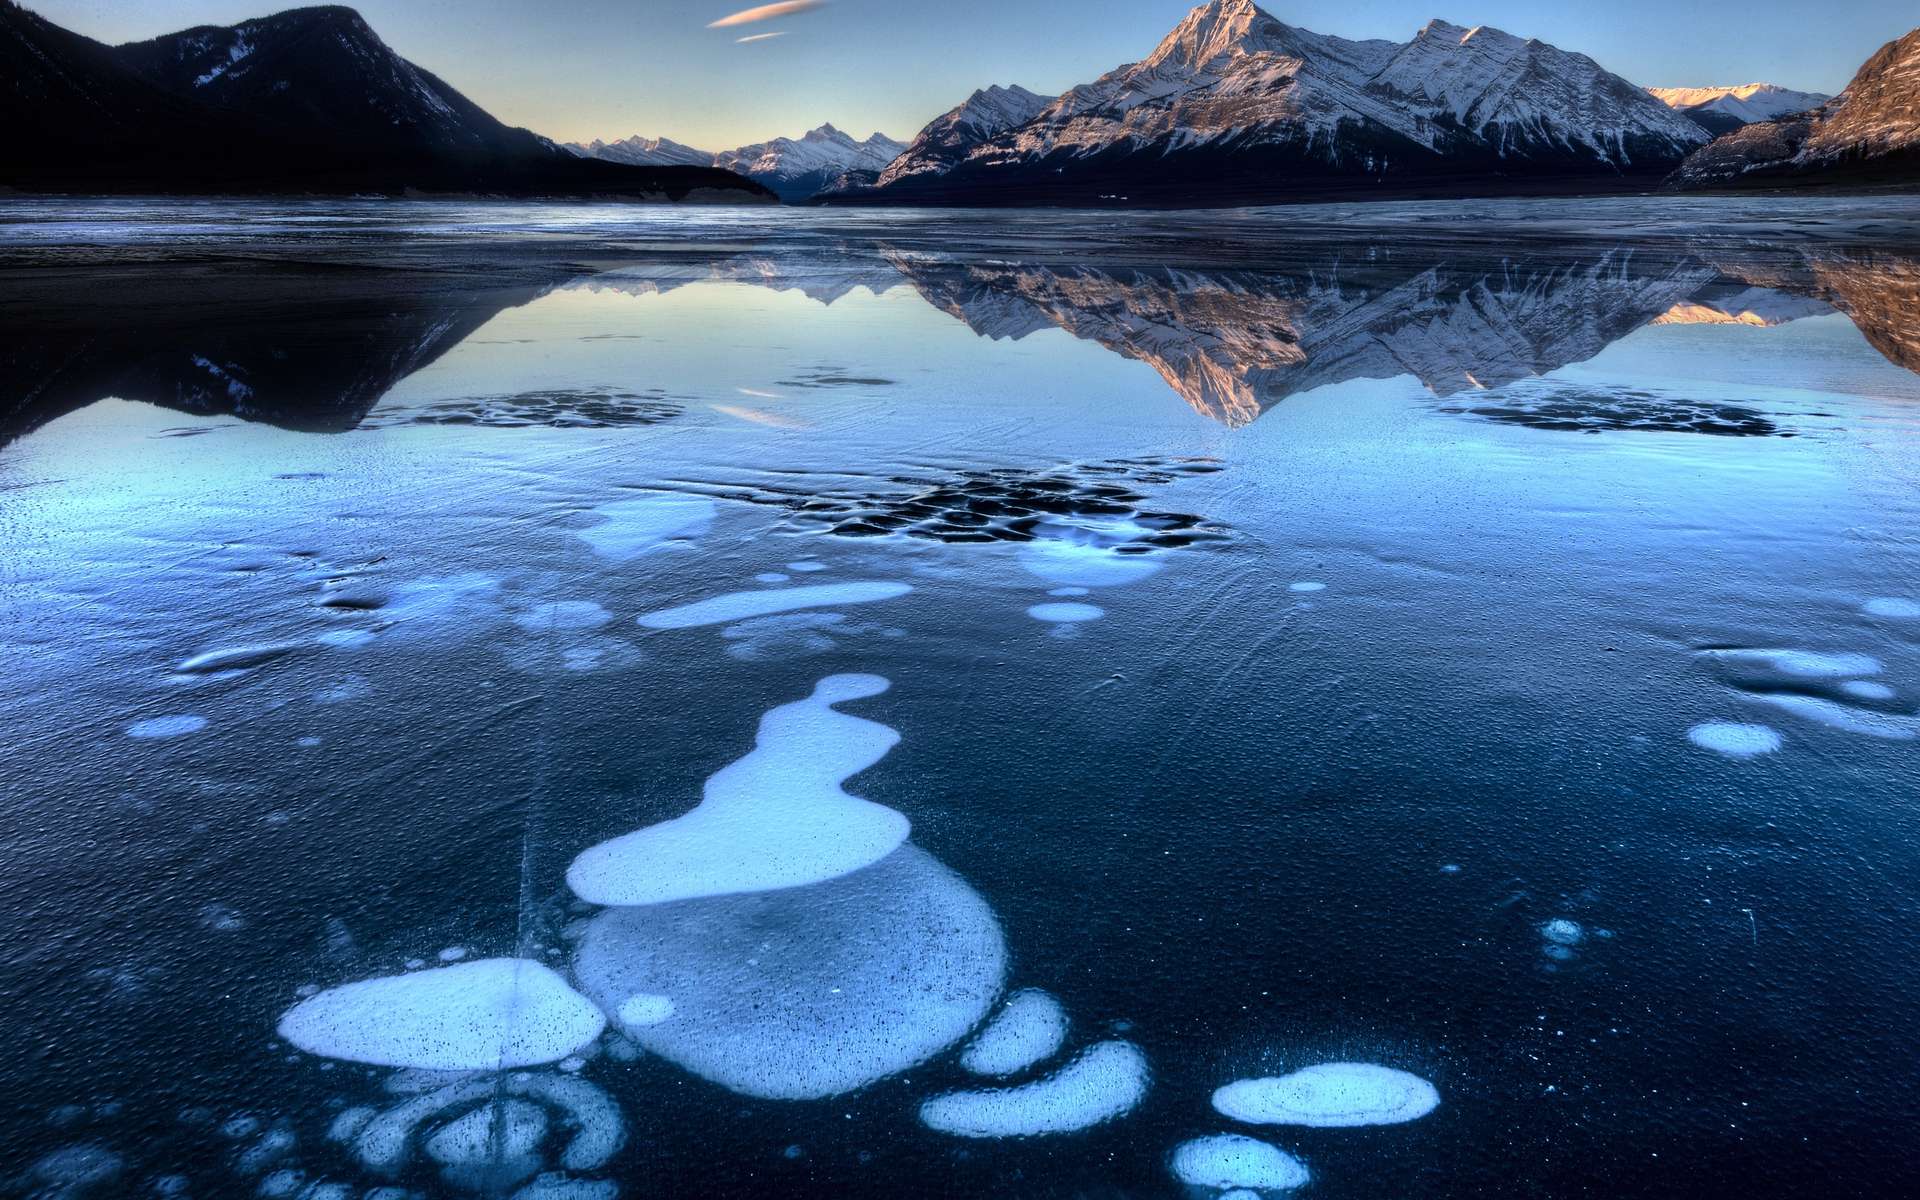 Des bulles de méthane piégées sous la glace du lac Abraham, un lac artificiel sur la rivière Saskatchewan Nord à l'ouest de l'Alberta au Canada. © Fotolia, pictureguy32